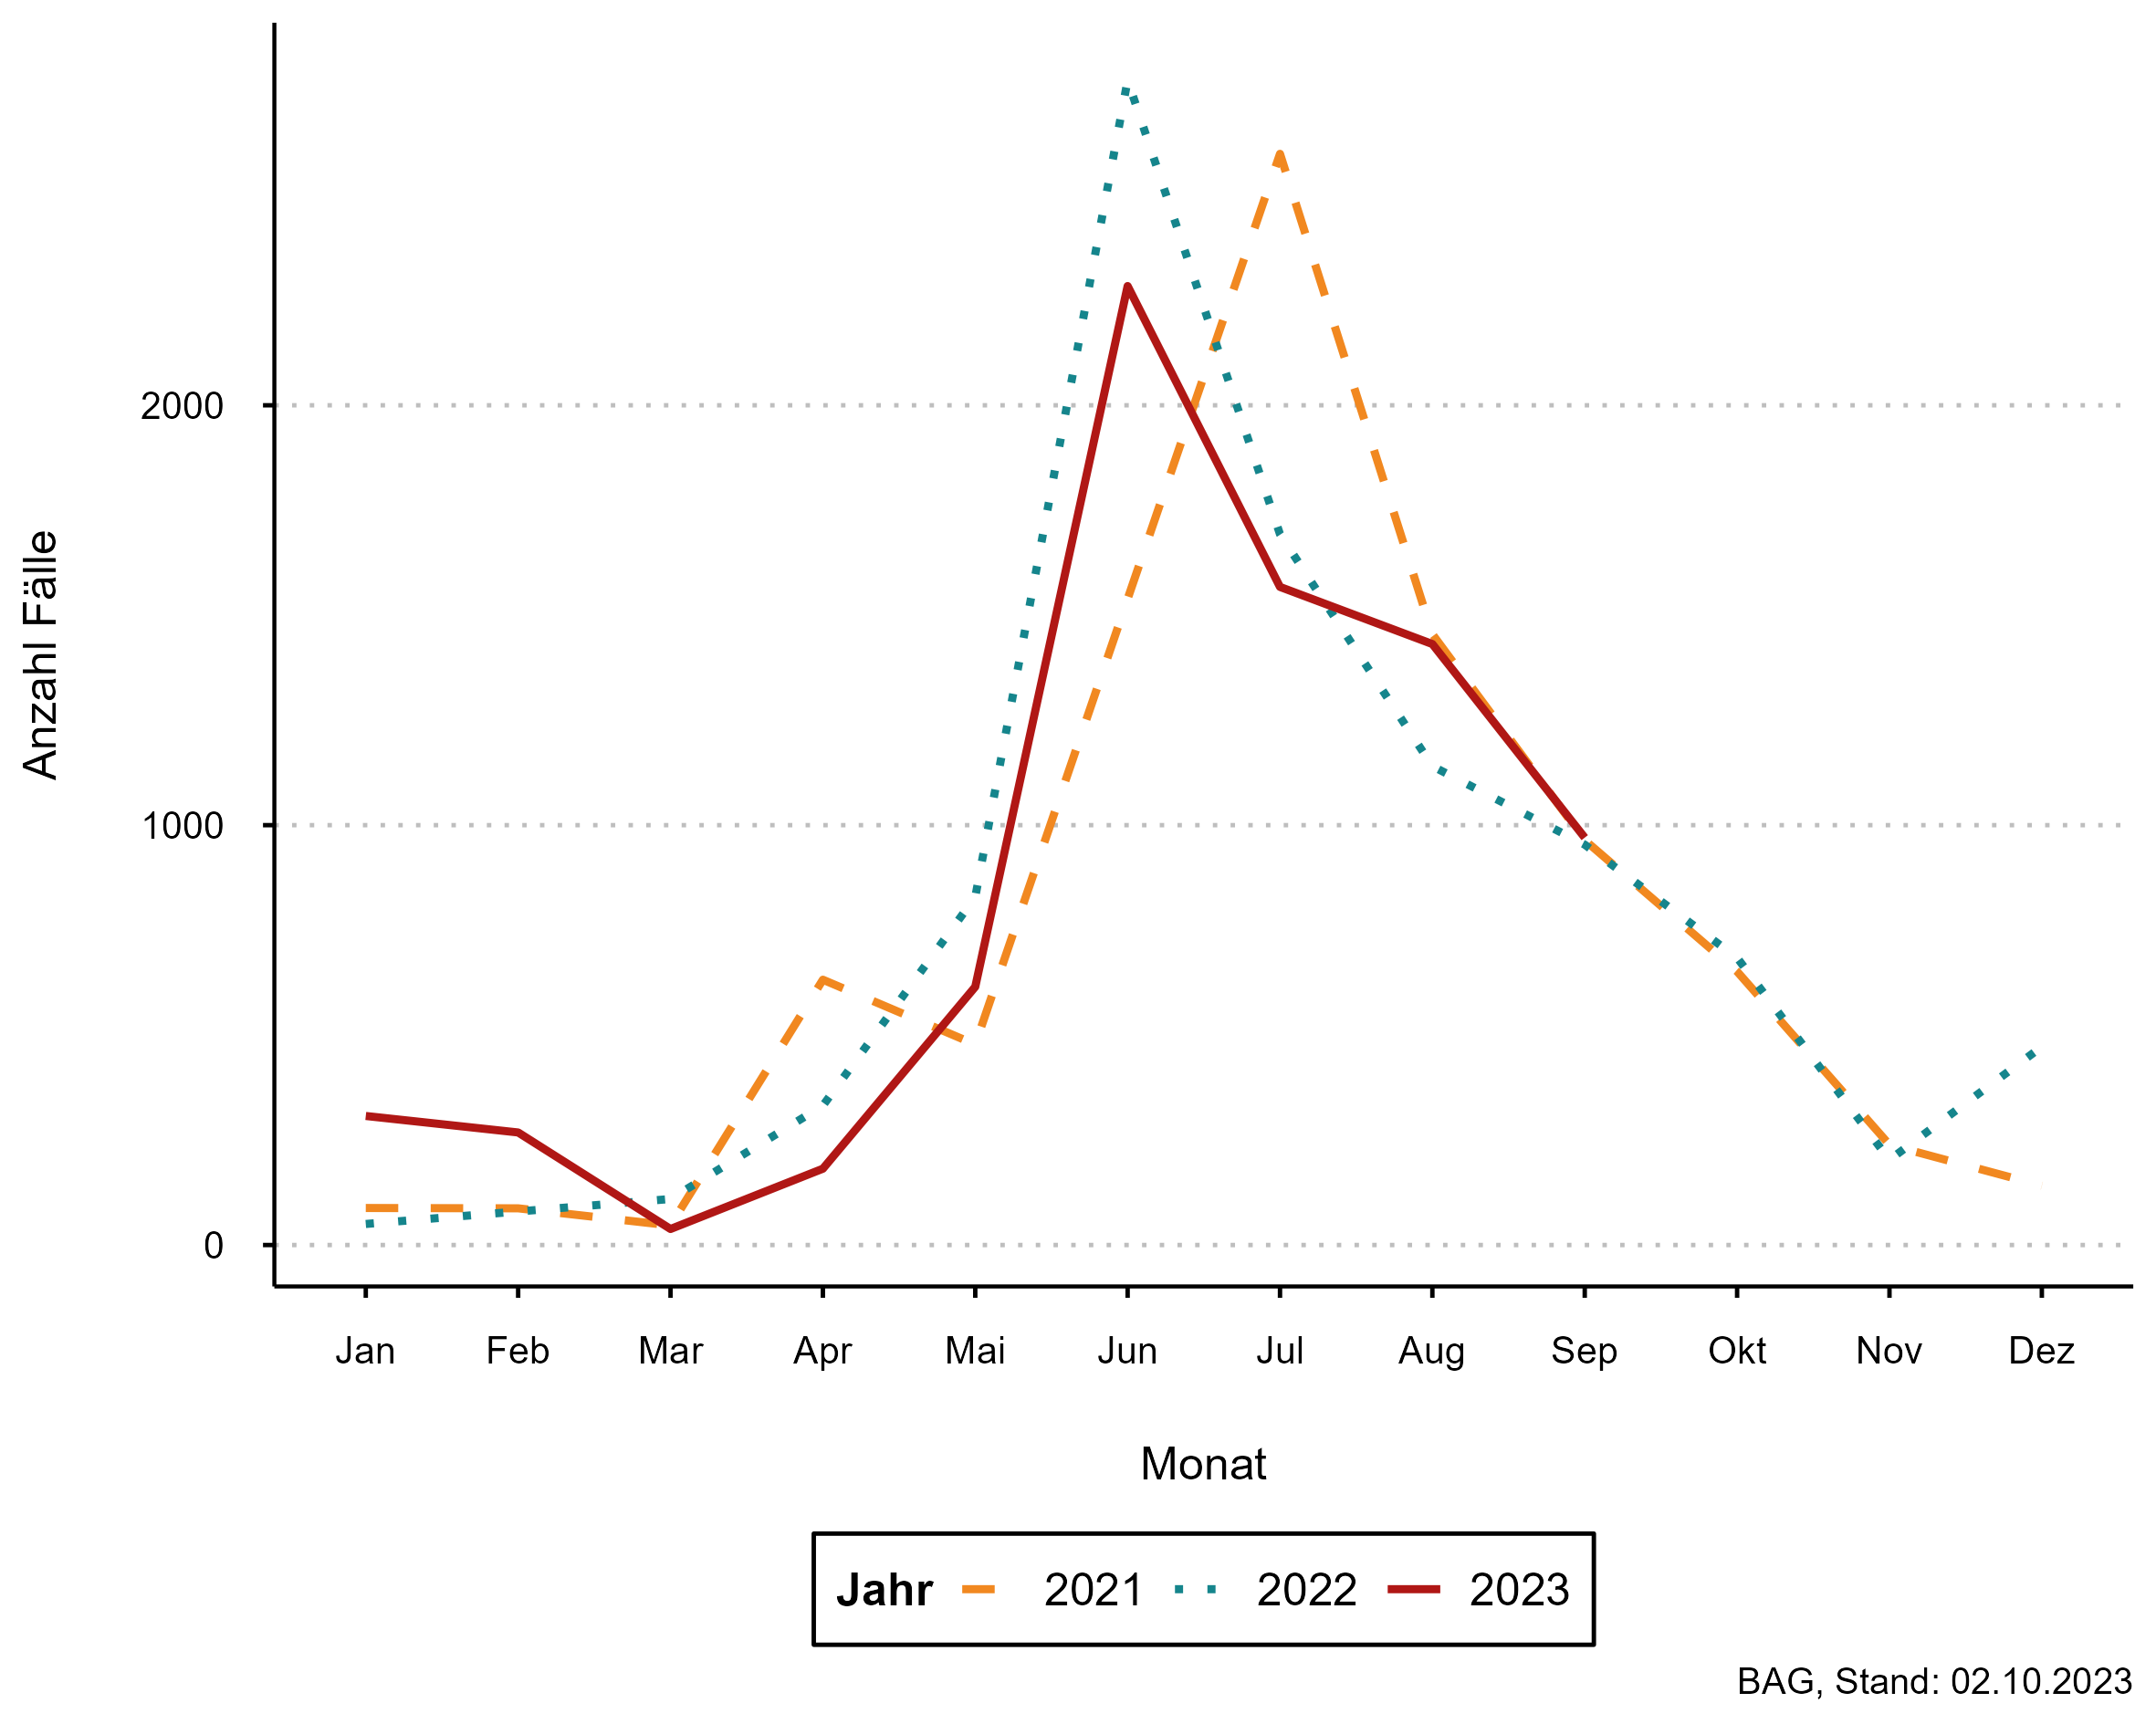 Abbildung 3: Hochgerechente Anzahl Fälle von Lyme-Borreliose pro Monat, 2021 – 2023 (zugehörige Daten in der Datentabelle Lagebericht Zecken auf dieser Seite)